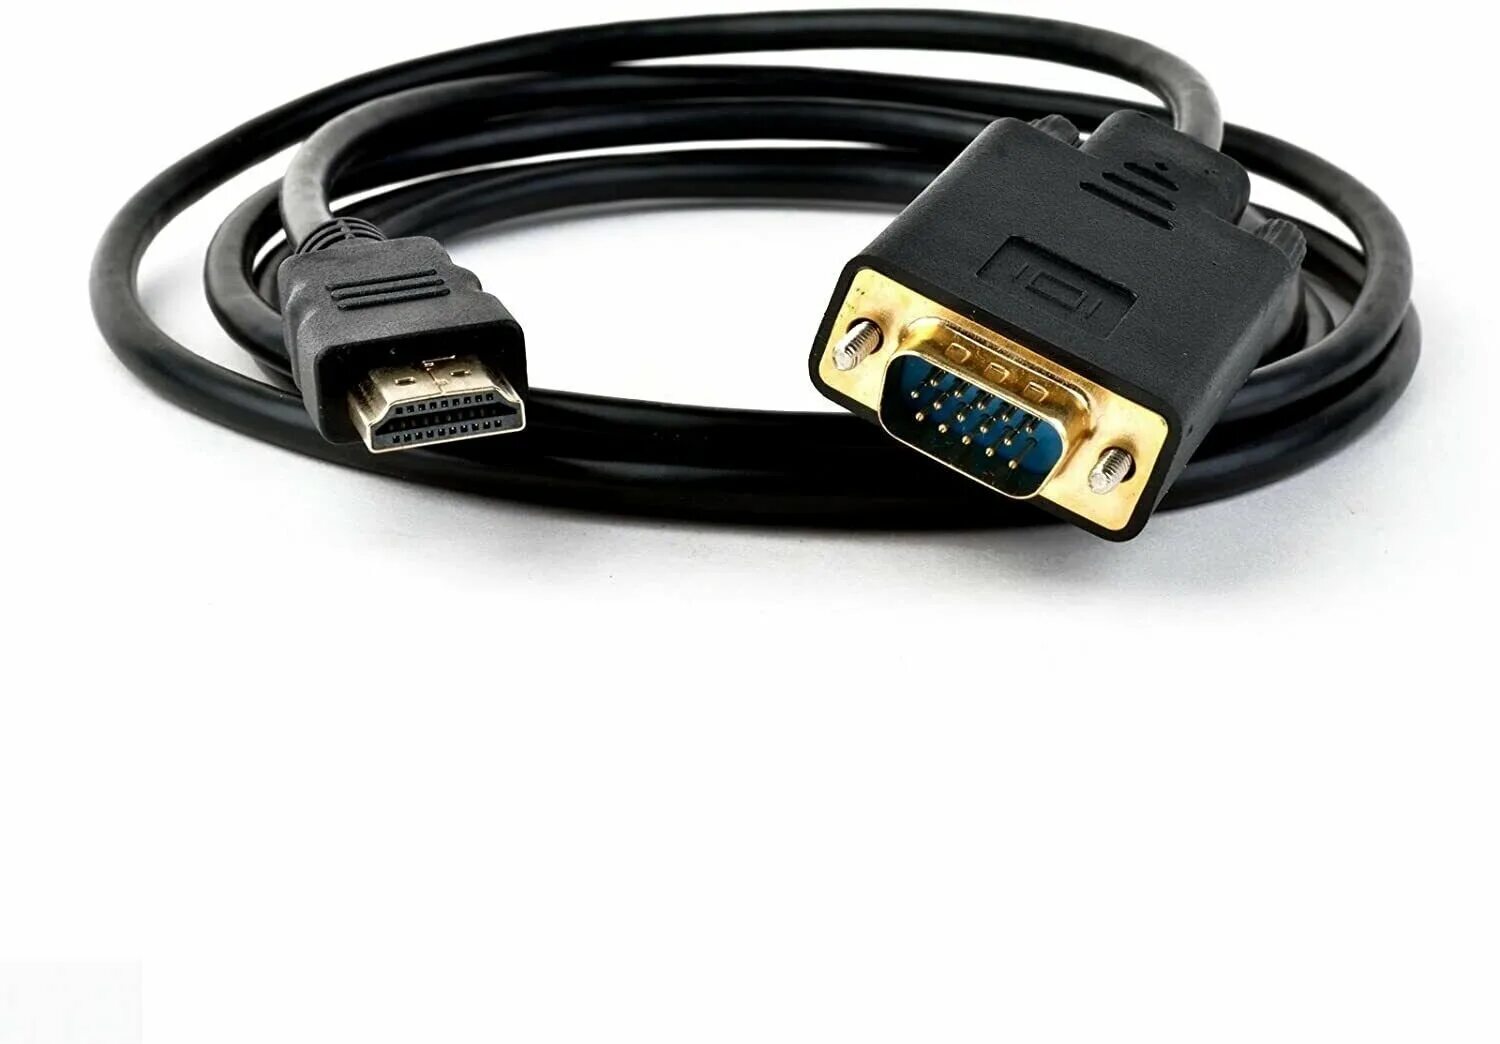 Переходник для hdmi кабеля. Кабель KS-is HDMI M VGA M Full (KS-441) черно-черный 1.8м. Кабель HDMI - VGA, 1,8 М, однонаправленный, 1080p, KS-is. Переходник Orient HDMI - VGA, 1.8 М. Шнур переходник VGA HDMI.